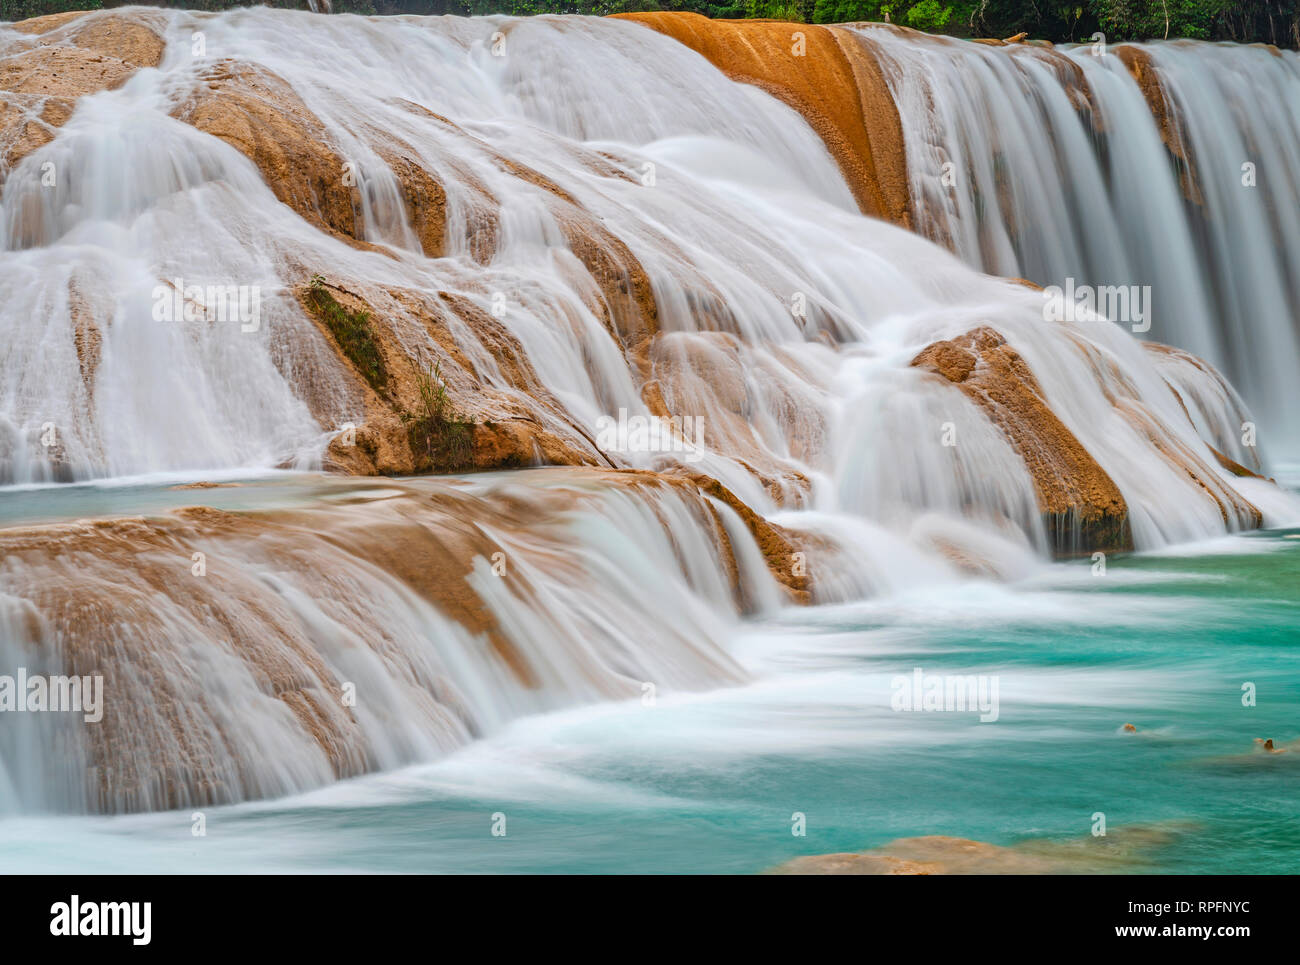 Die majestätischen türkisfarbenen Wasser des Agua Azul Kaskaden und Wasserfällen entlang einer Kalkstein Ridge in der Nähe von Palenque, Chiapas, Mexiko. Stockfoto